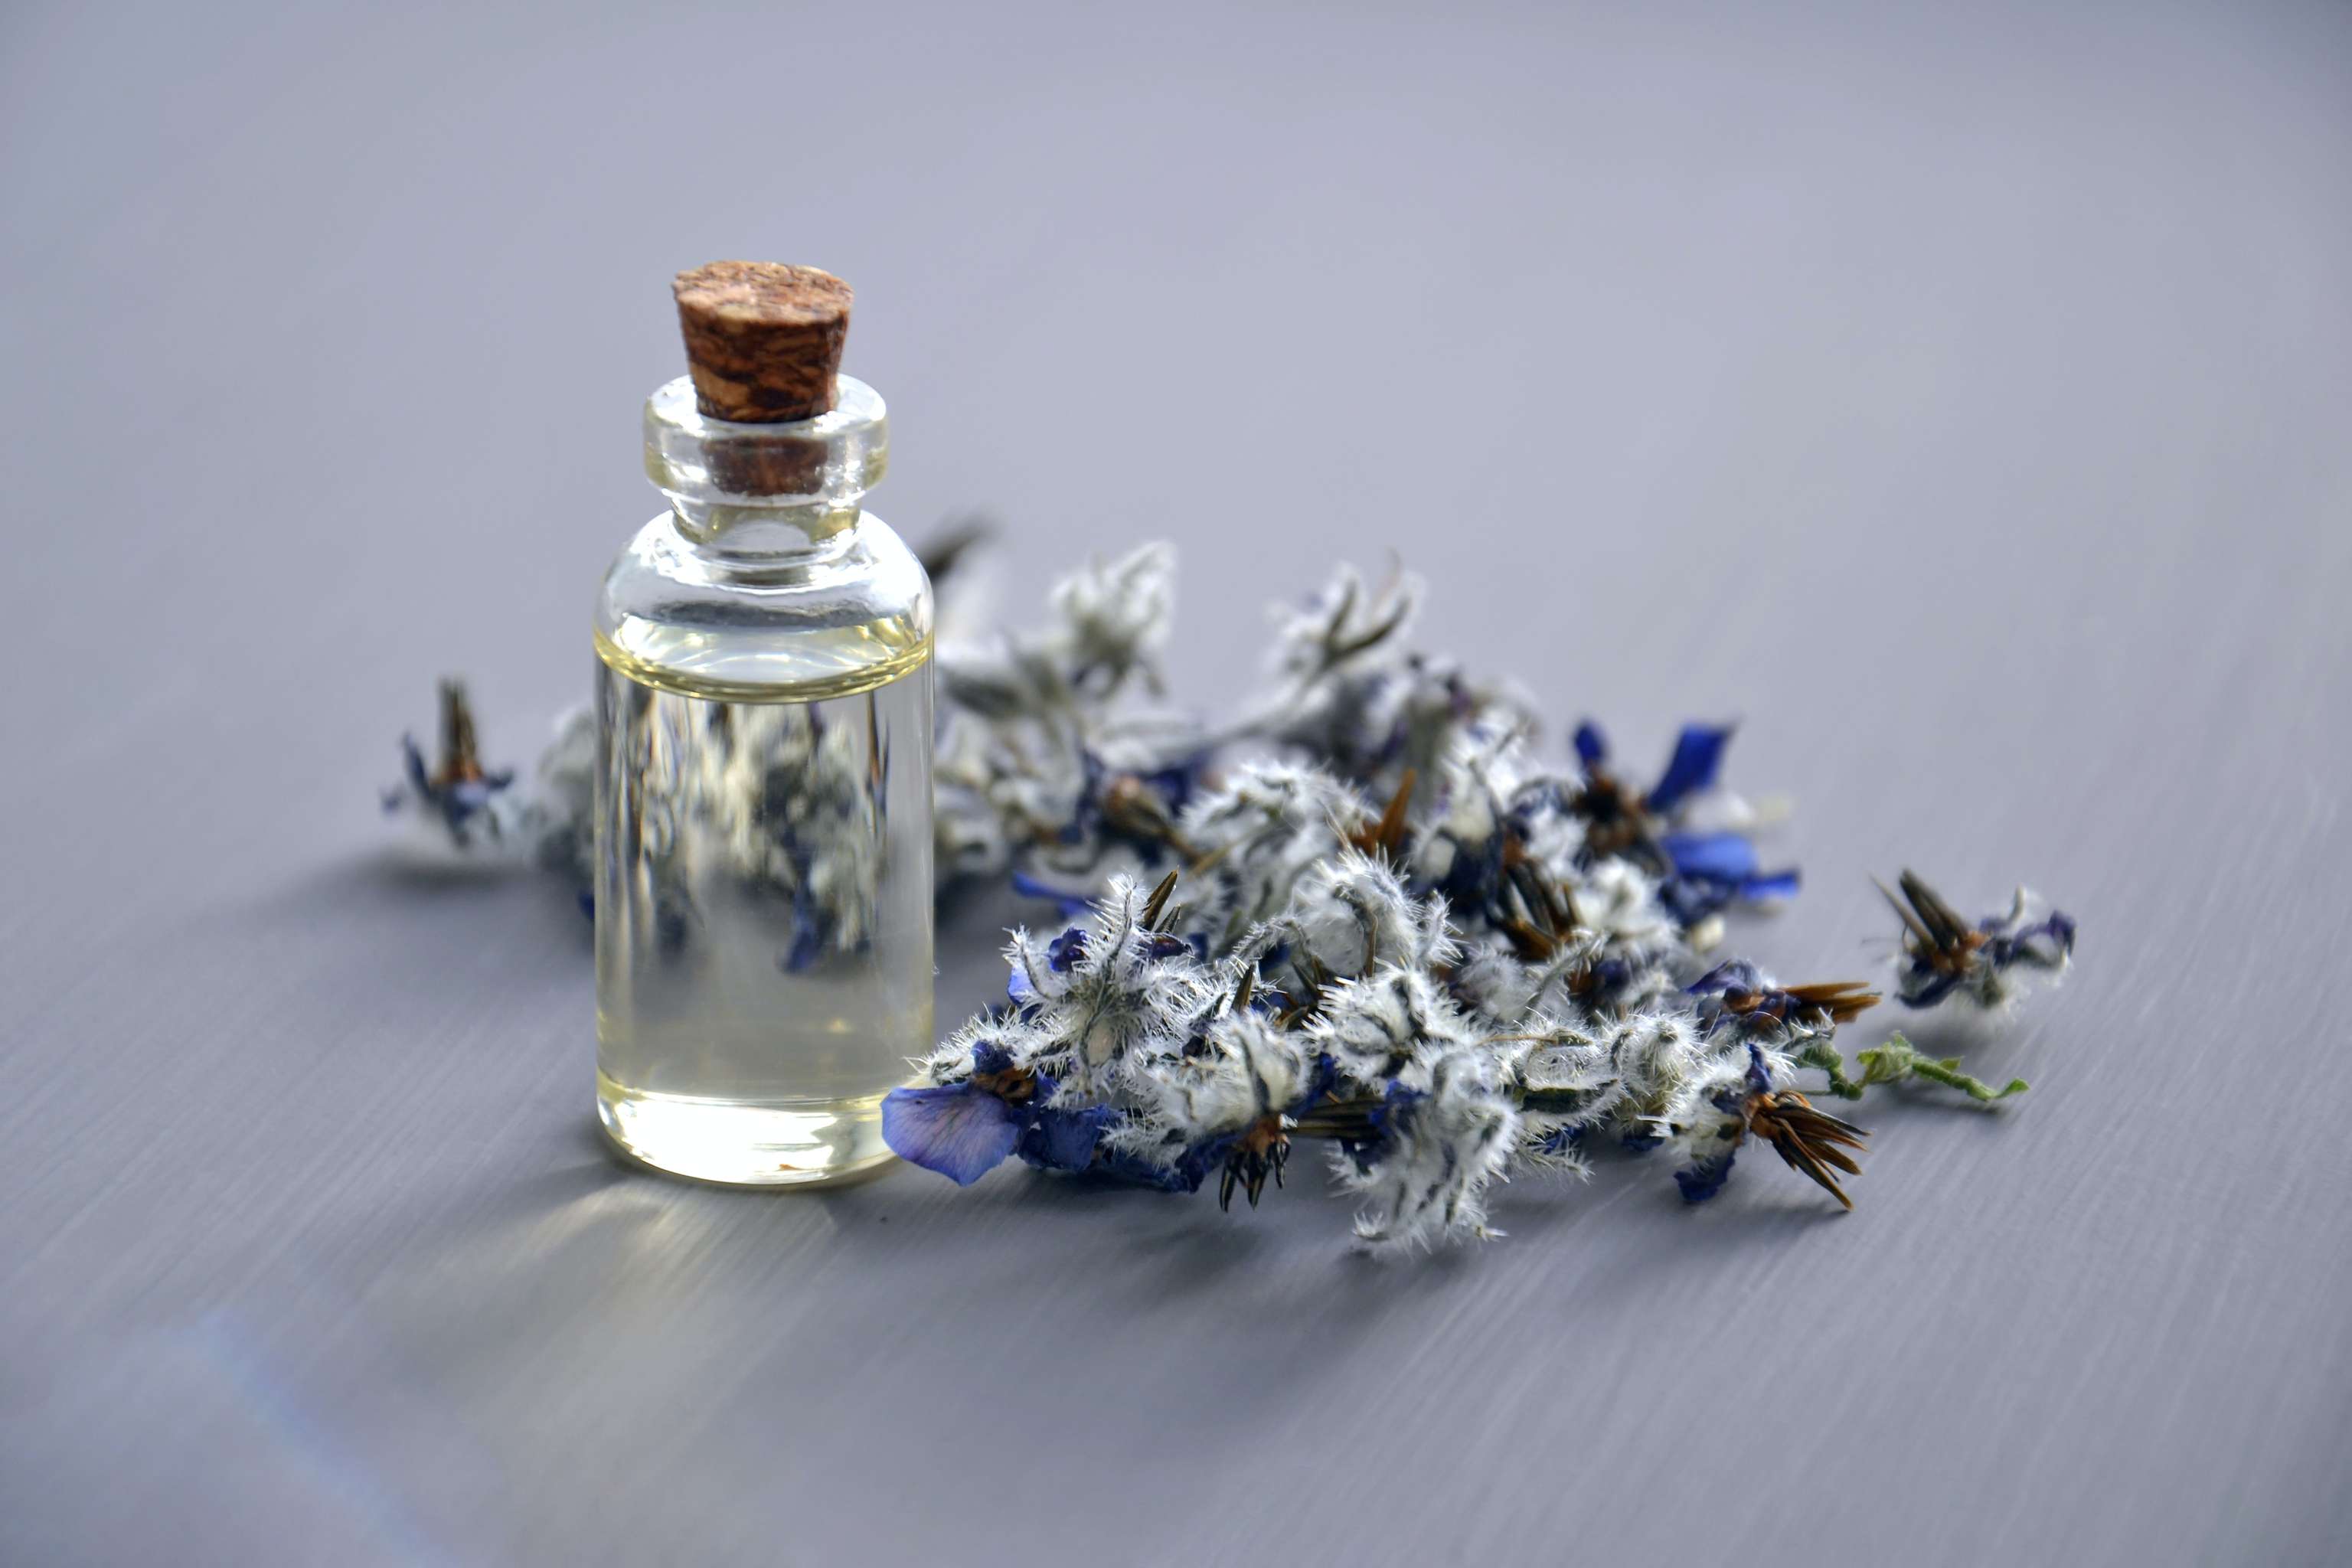 Blüten mit kleiner Glasflasche. Drinnen ist ein aromatisches Öl.